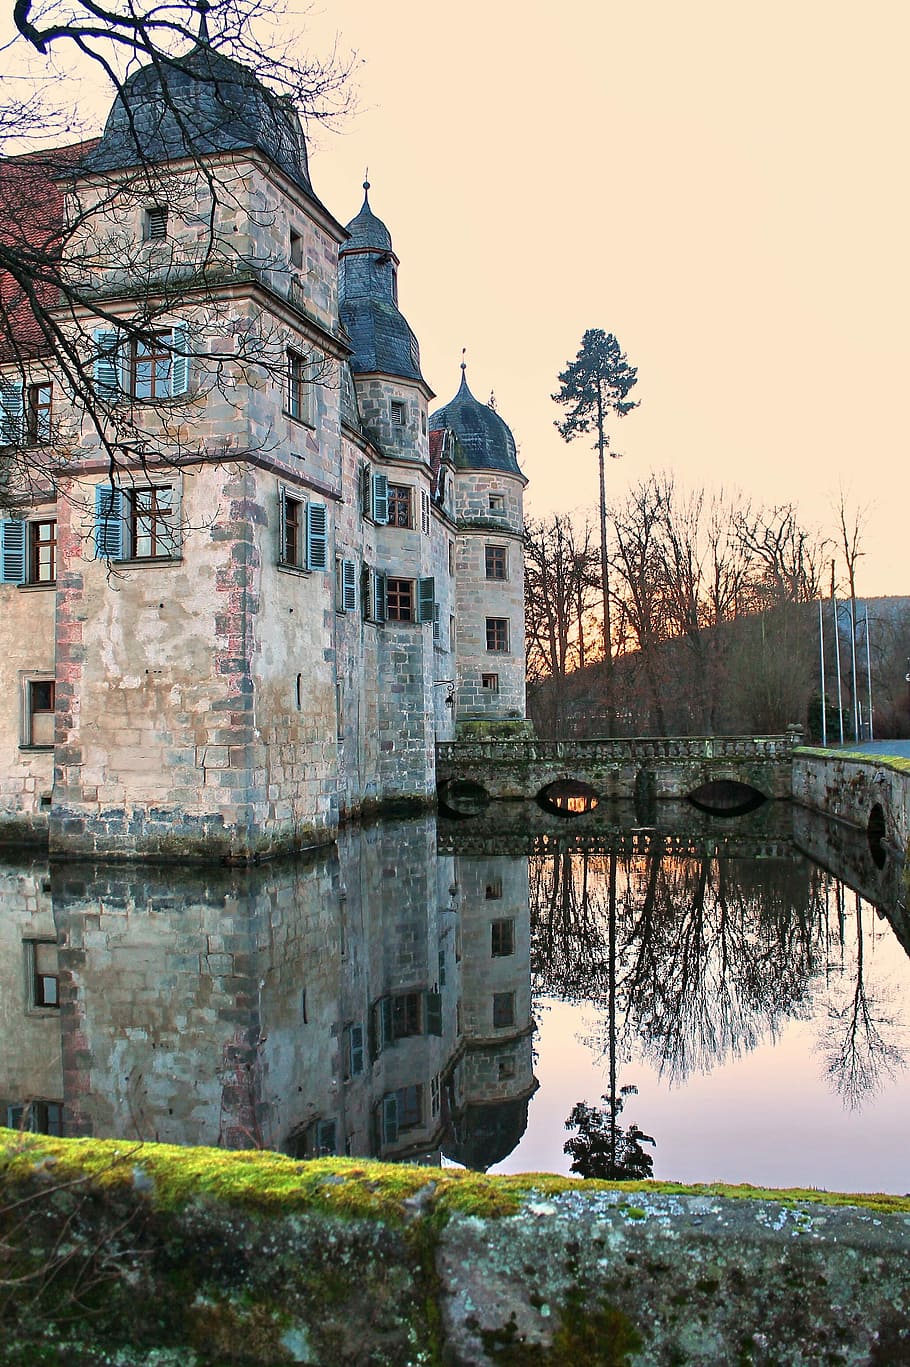 Castillo con foso, francos suizos, mittwitz, baviera, deutchland, edad media, cerca del agua, nuremberg, puente, torre